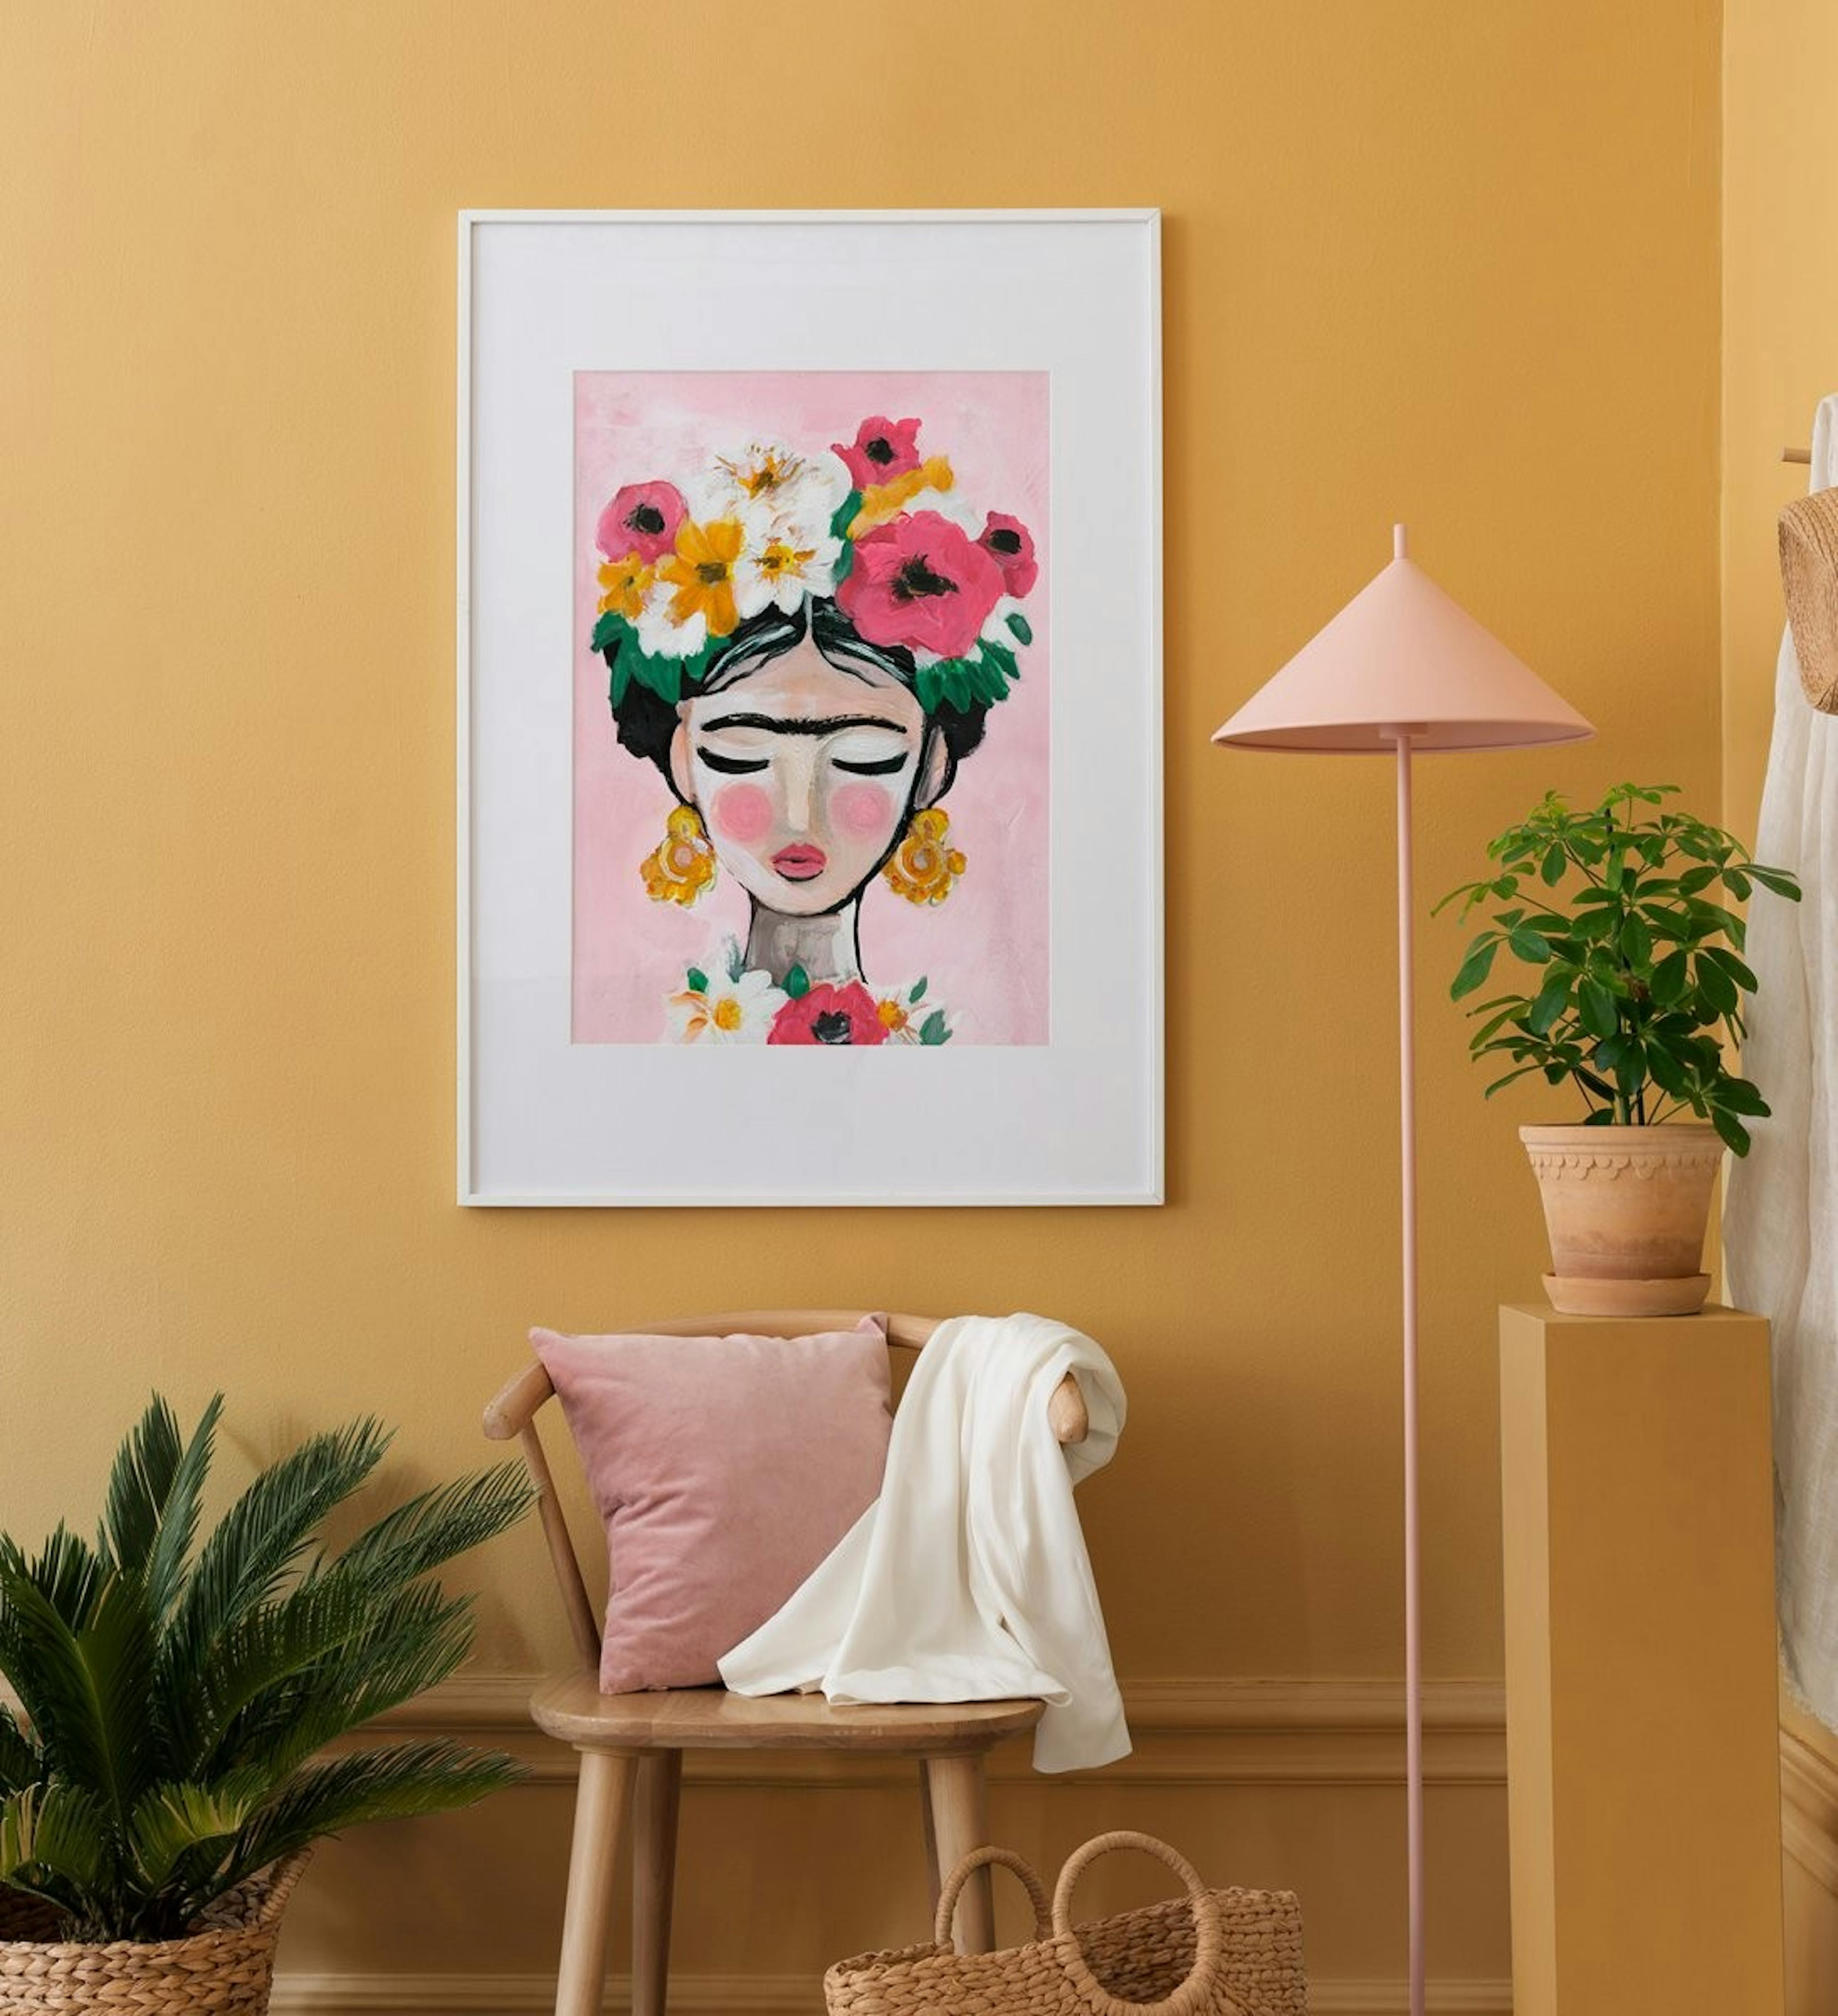 복도 또는 거실을위한 오크 프레임과 행복한 색상의 Frida Kahlo 갤러리 벽